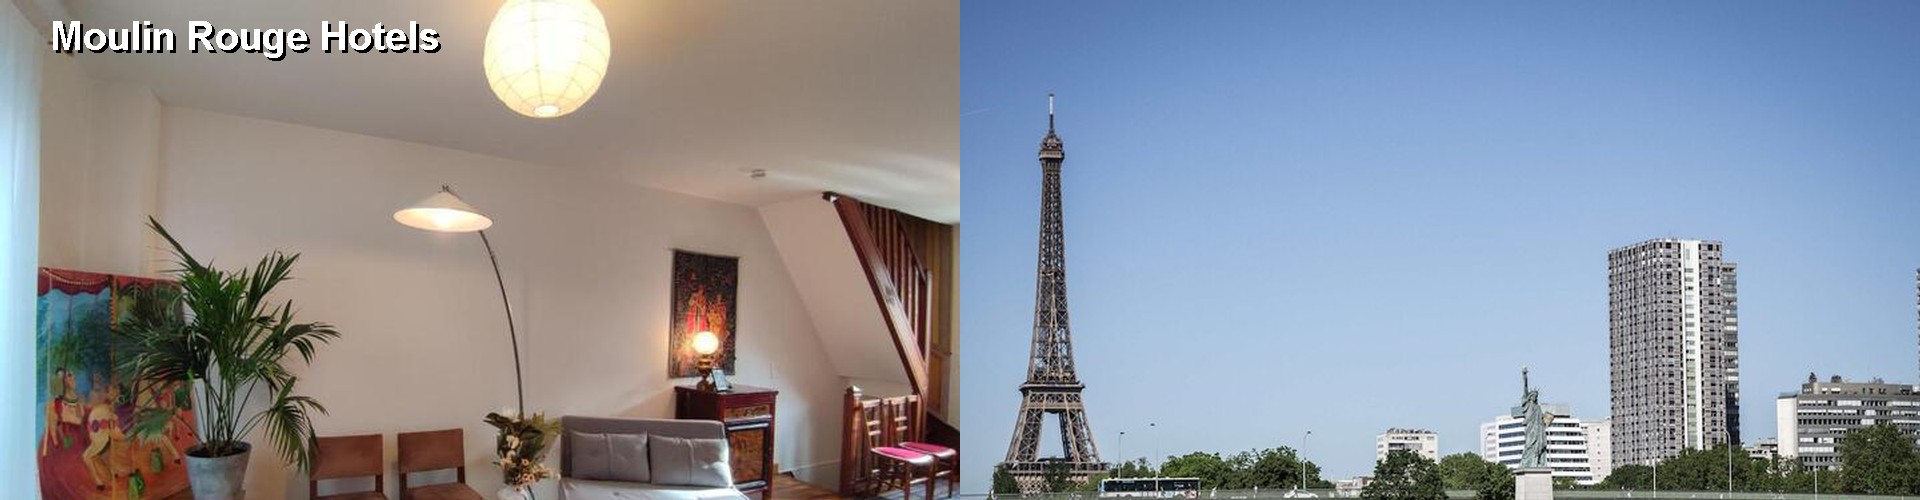 5 Best Hotels near Moulin Rouge